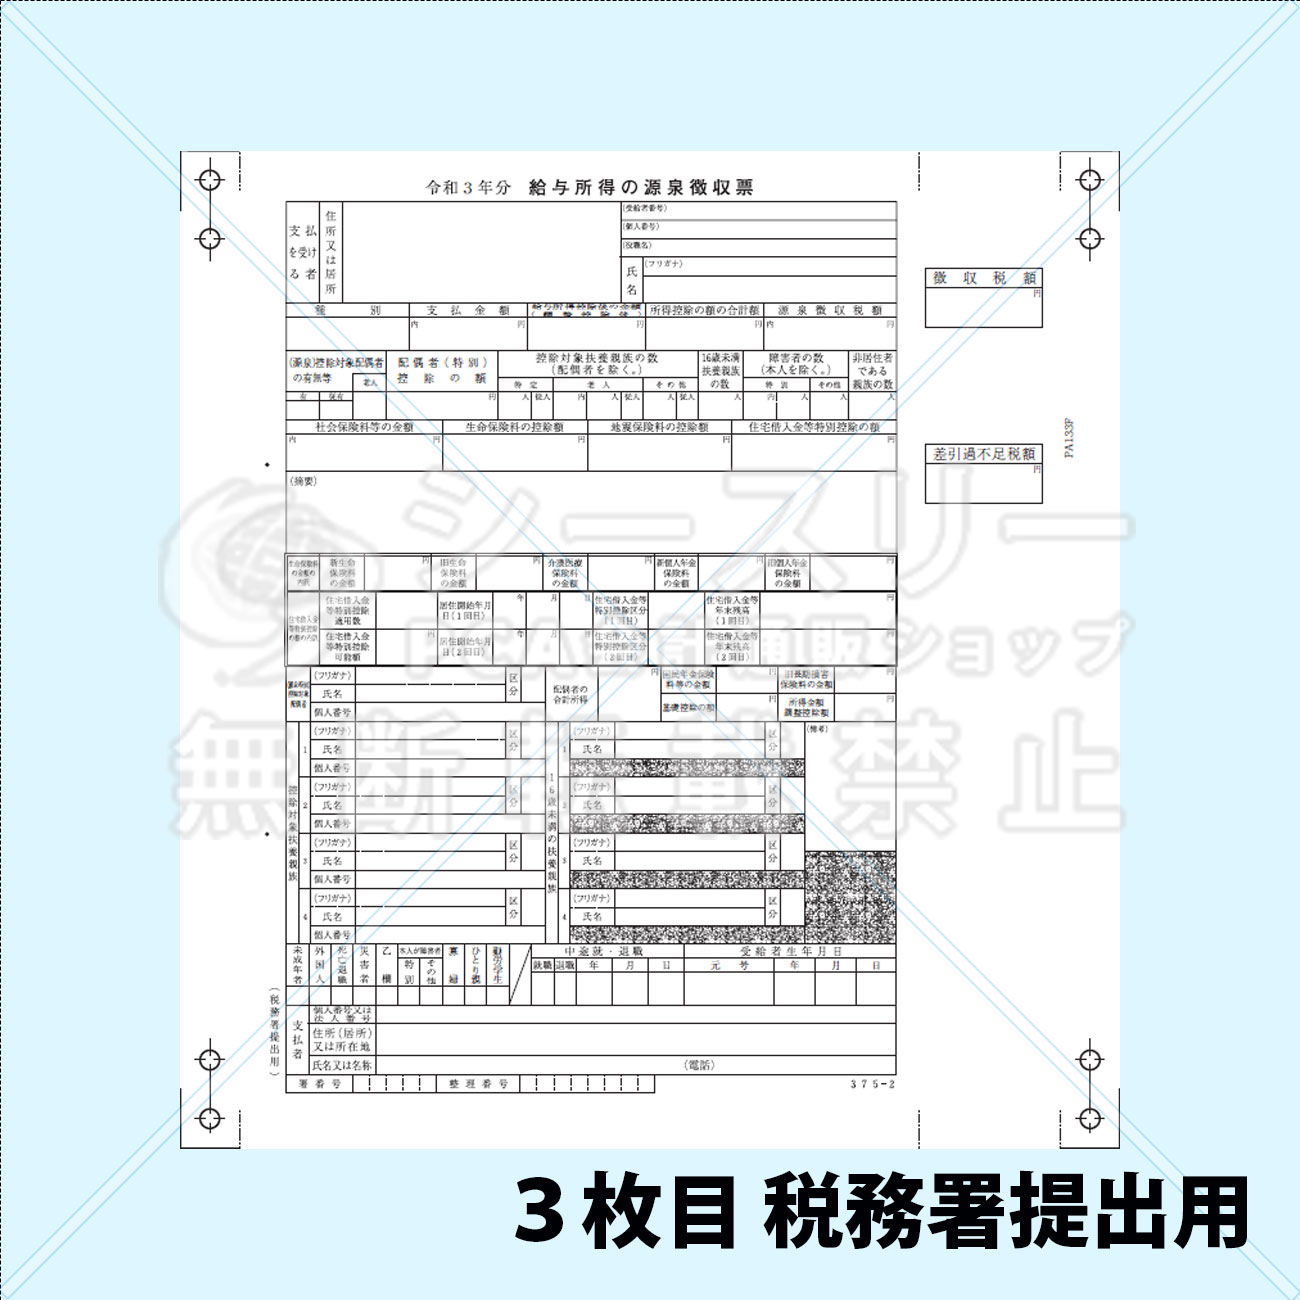 PA133F R03 源泉徴収票 連続用紙ドットプリンタ用【令和3年度版】